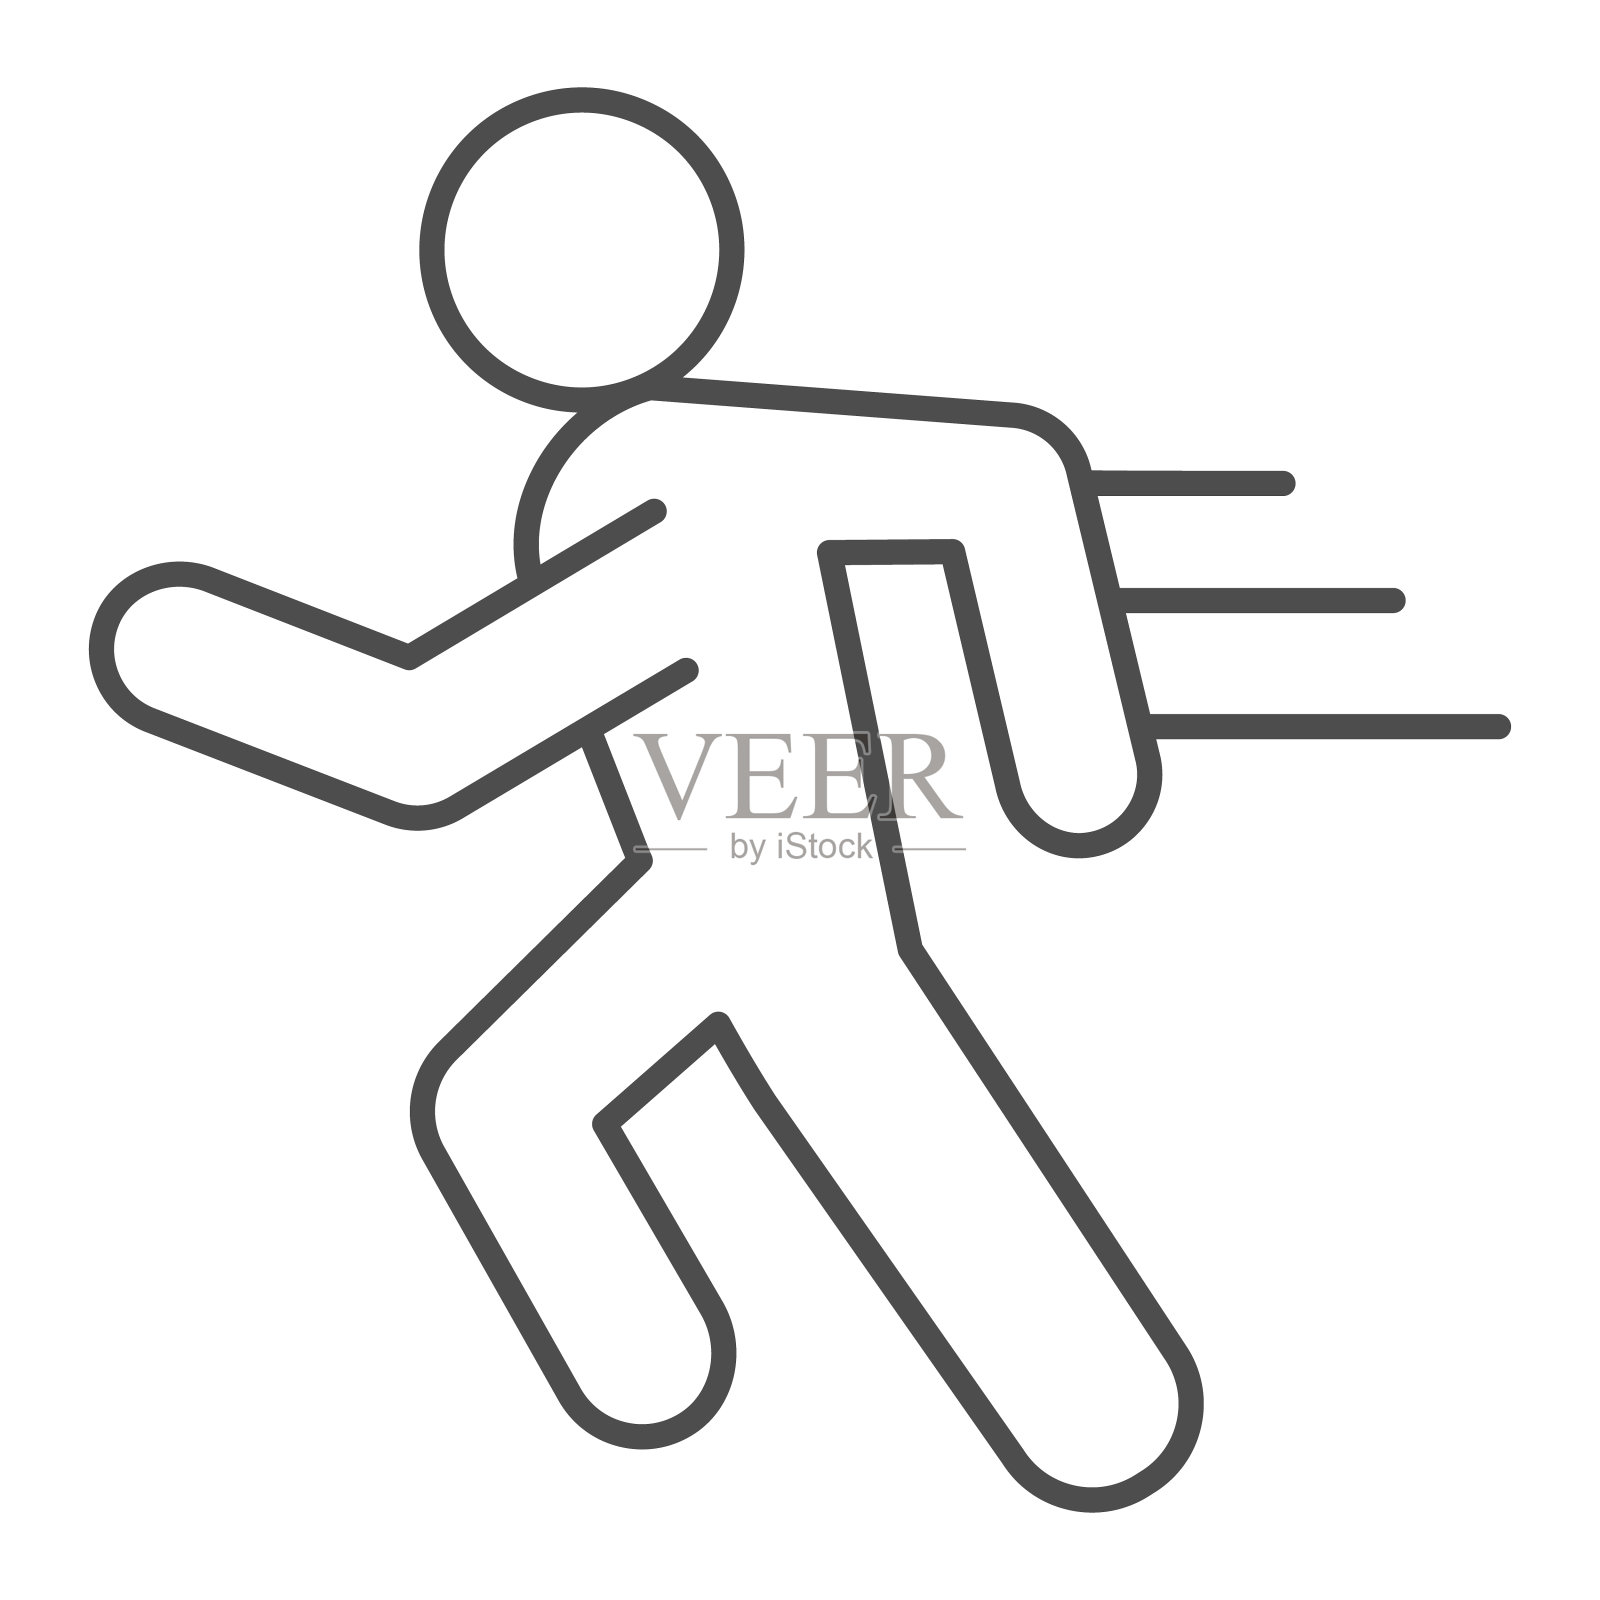 跑步线和固体图标。运动员跑步用速度动作符号，轮廓风格的象形文字在白色背景上。健康的生活方式或运动标志的移动概念和网页设计。矢量图形。图标素材